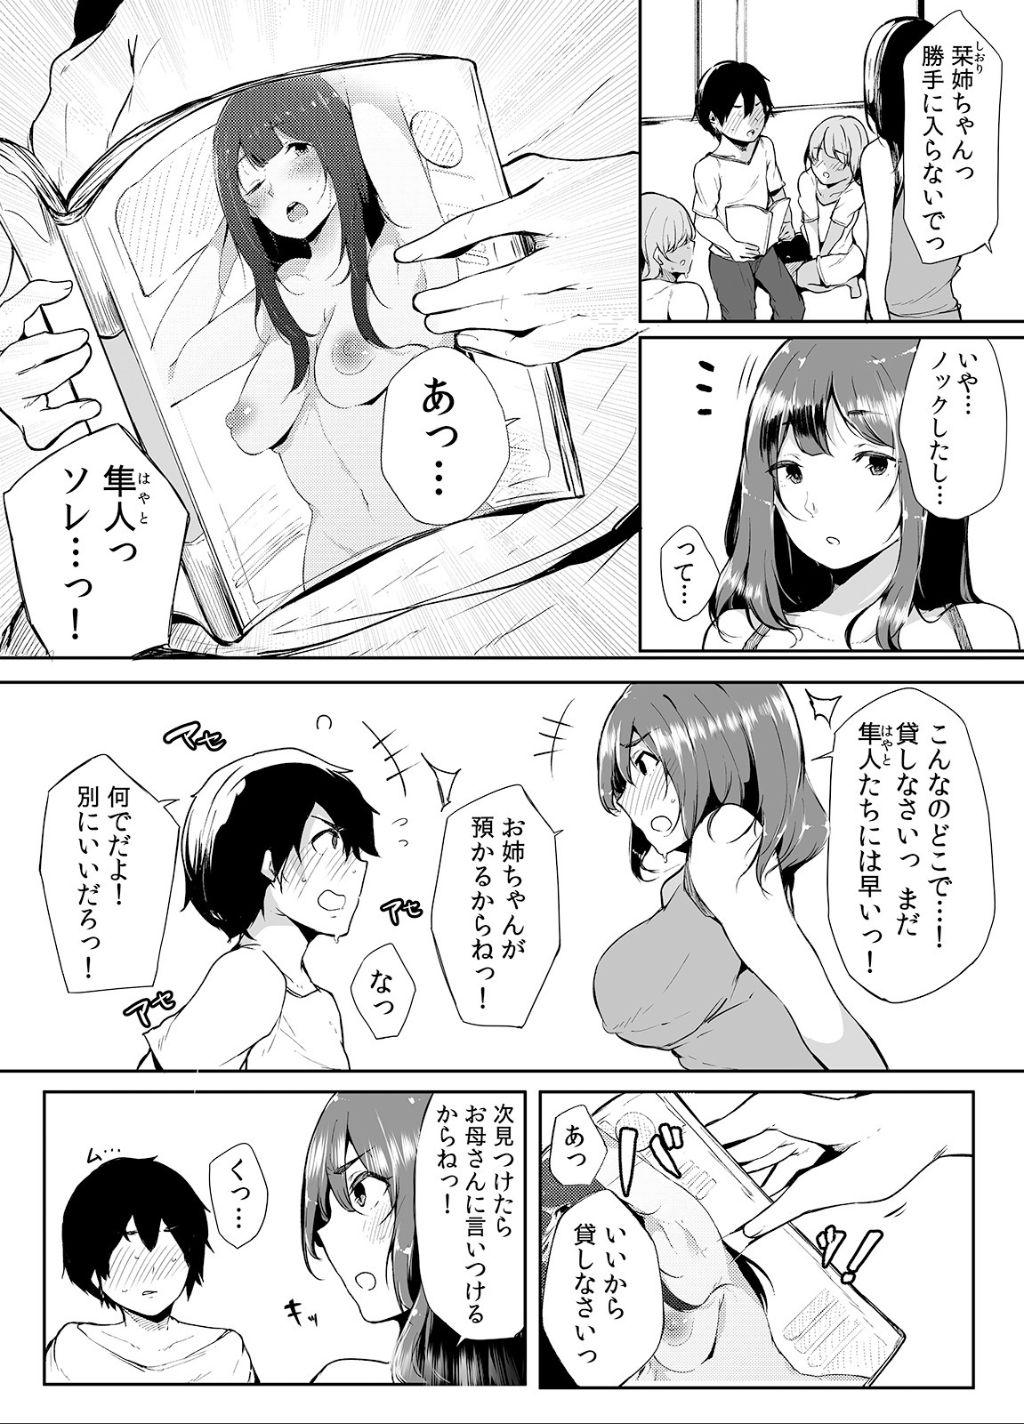 No Condom Otouto ni Ero Manga to Onaji Koto o Sare Chau o Nee-chan no Hanashi 1 - Original Underwear - Page 5